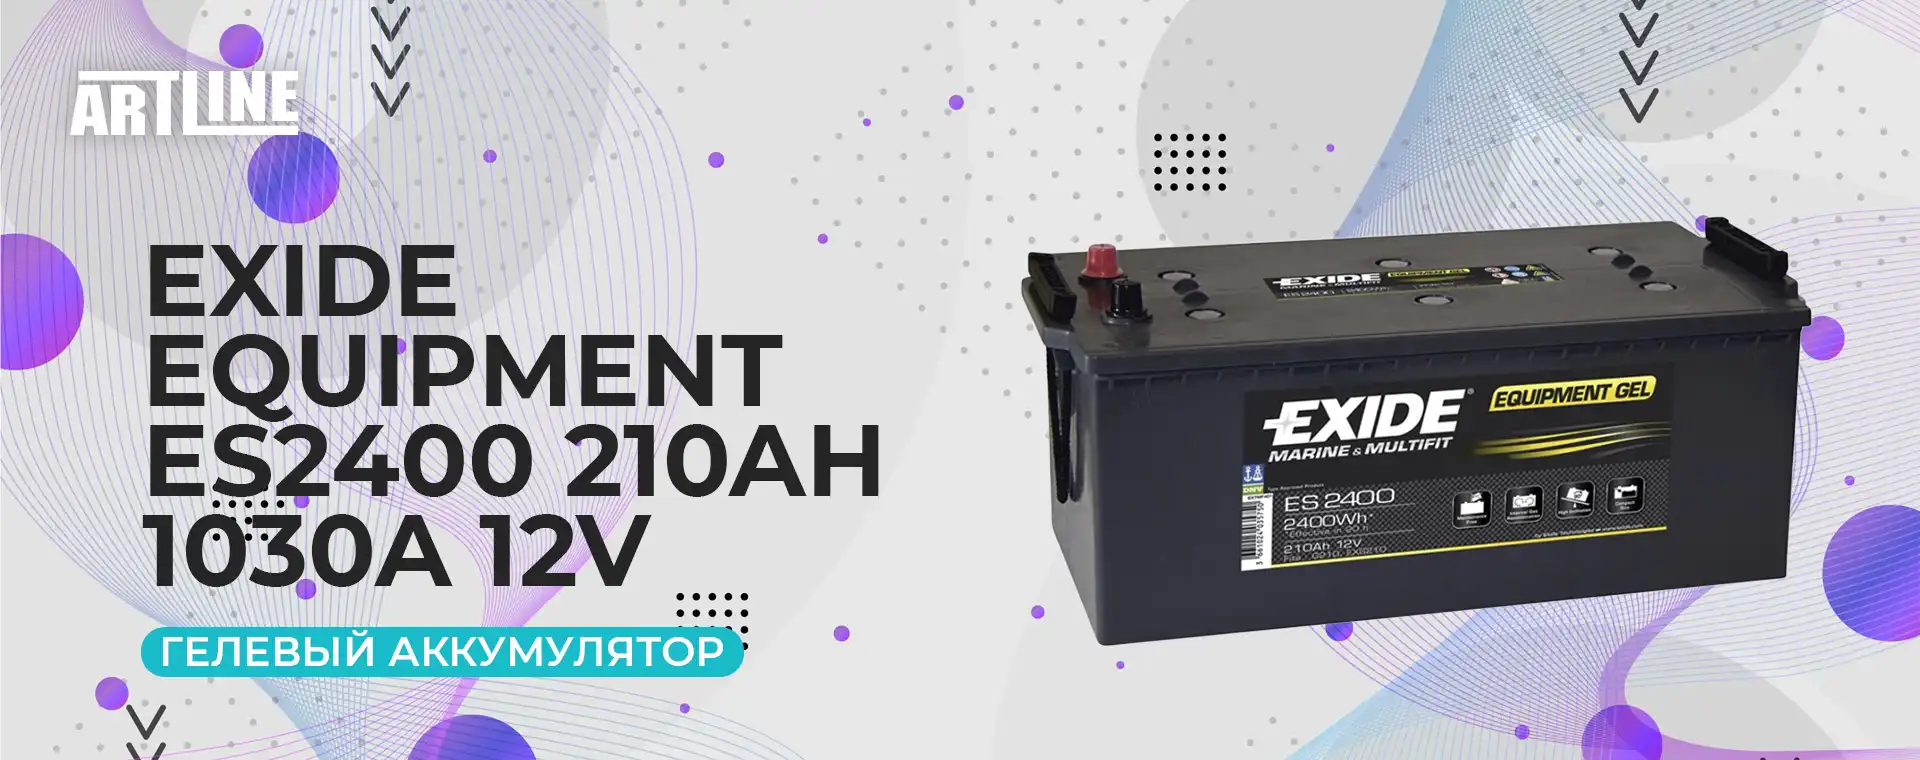 Гелевый аккумулятор Exide Equipment ES2400 210Ah 1030A 12V: подробный обзор  и характеристики